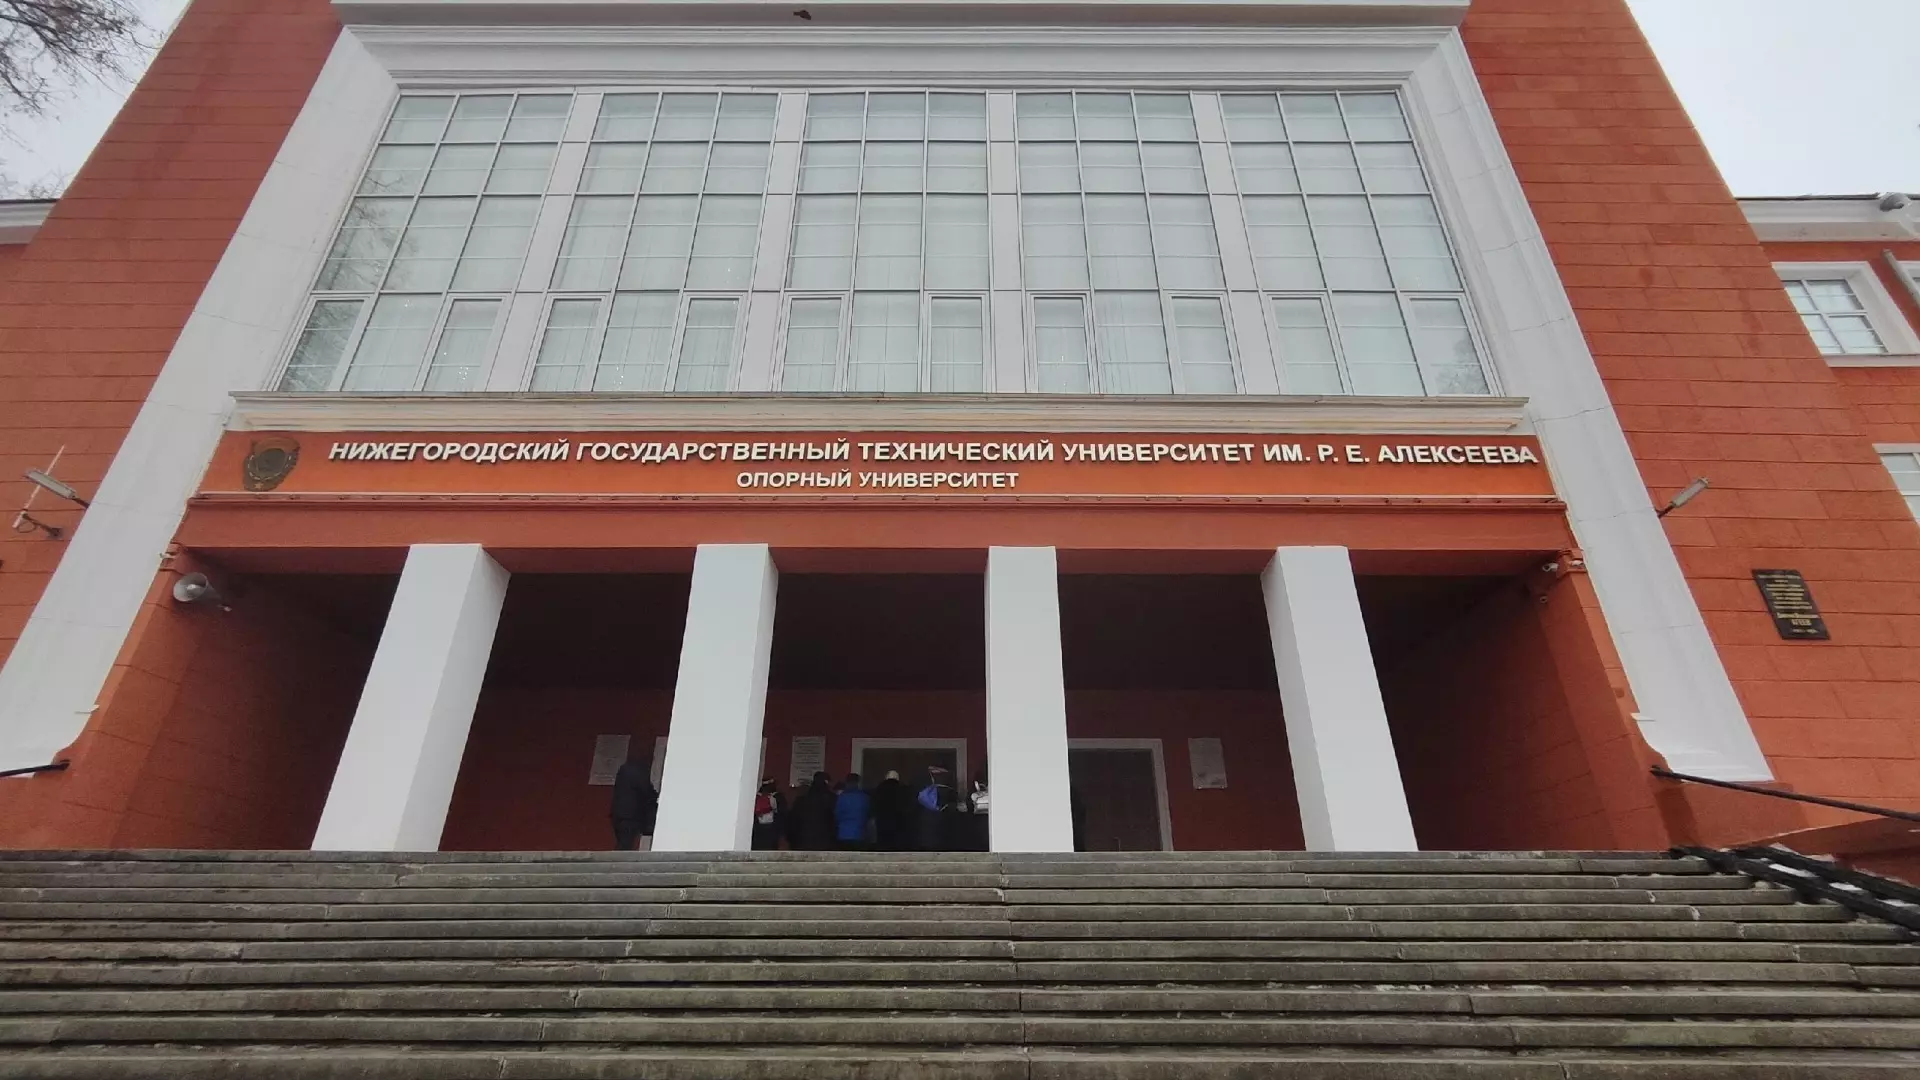 НГТУ им. Р. Е. Алексеева — один из старейших университетов Нижнего Новгорода